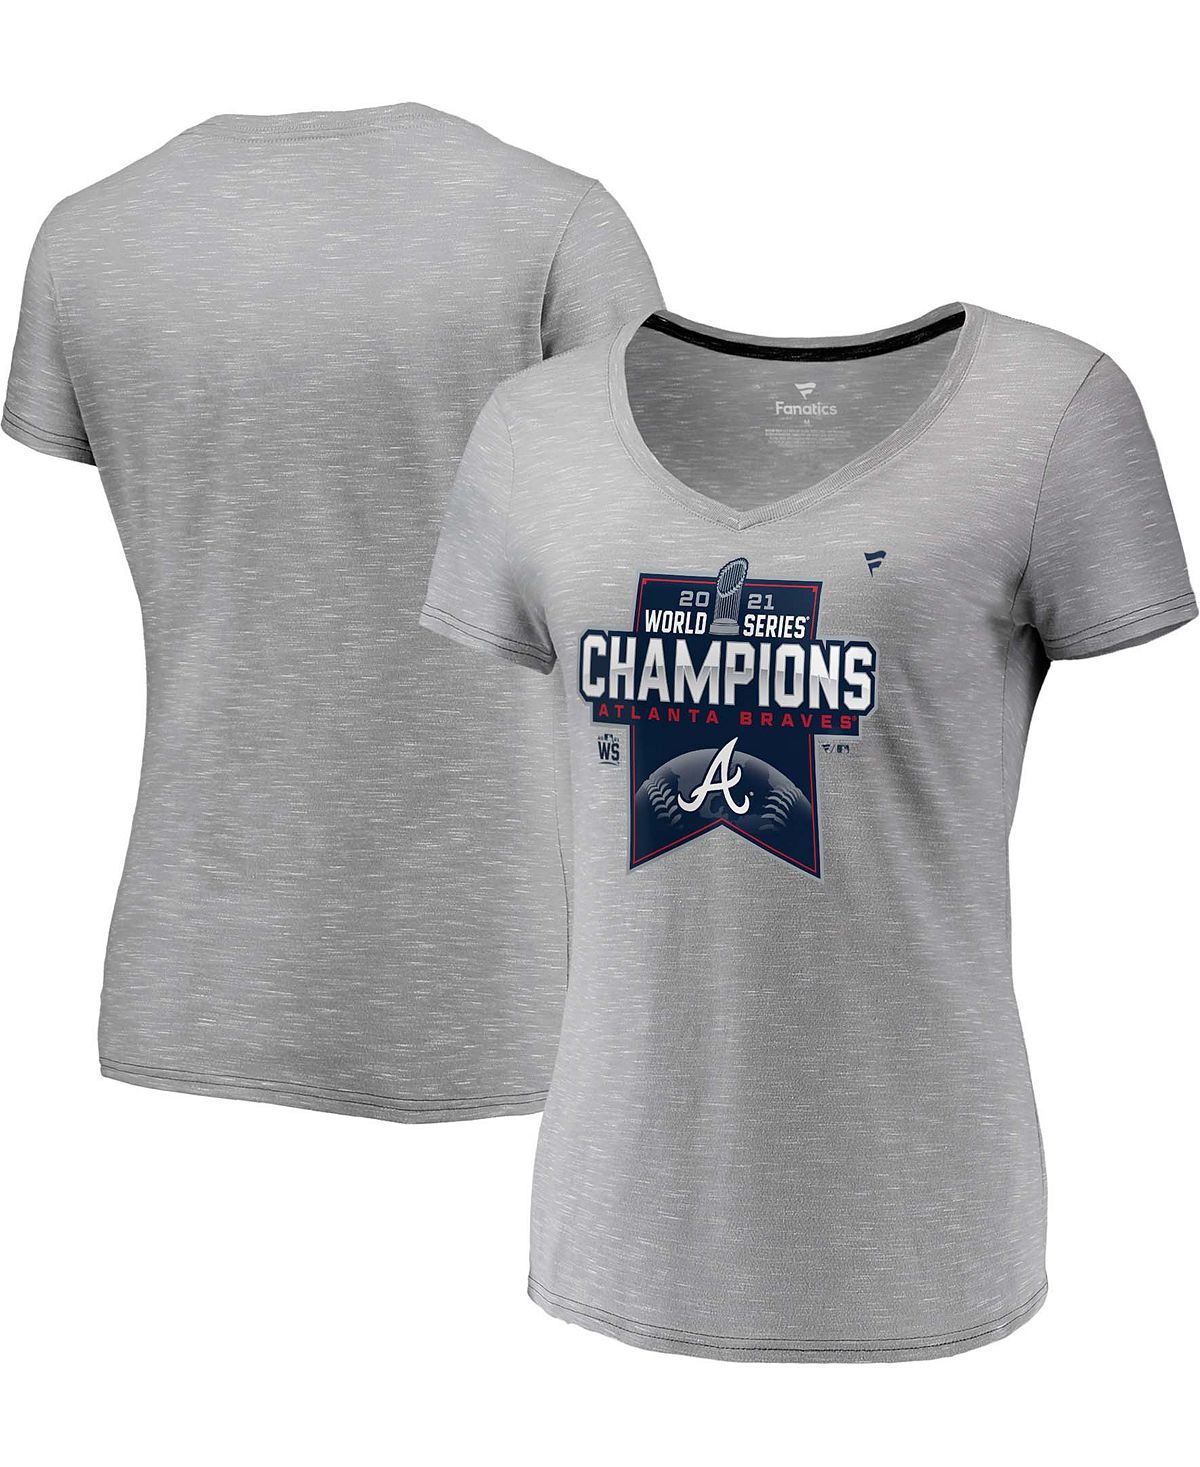 Женская футболка с v-образным вырезом в раздевалке Atlanta Braves World Series Champions 2021 Fanatics рюкзак ecco heath